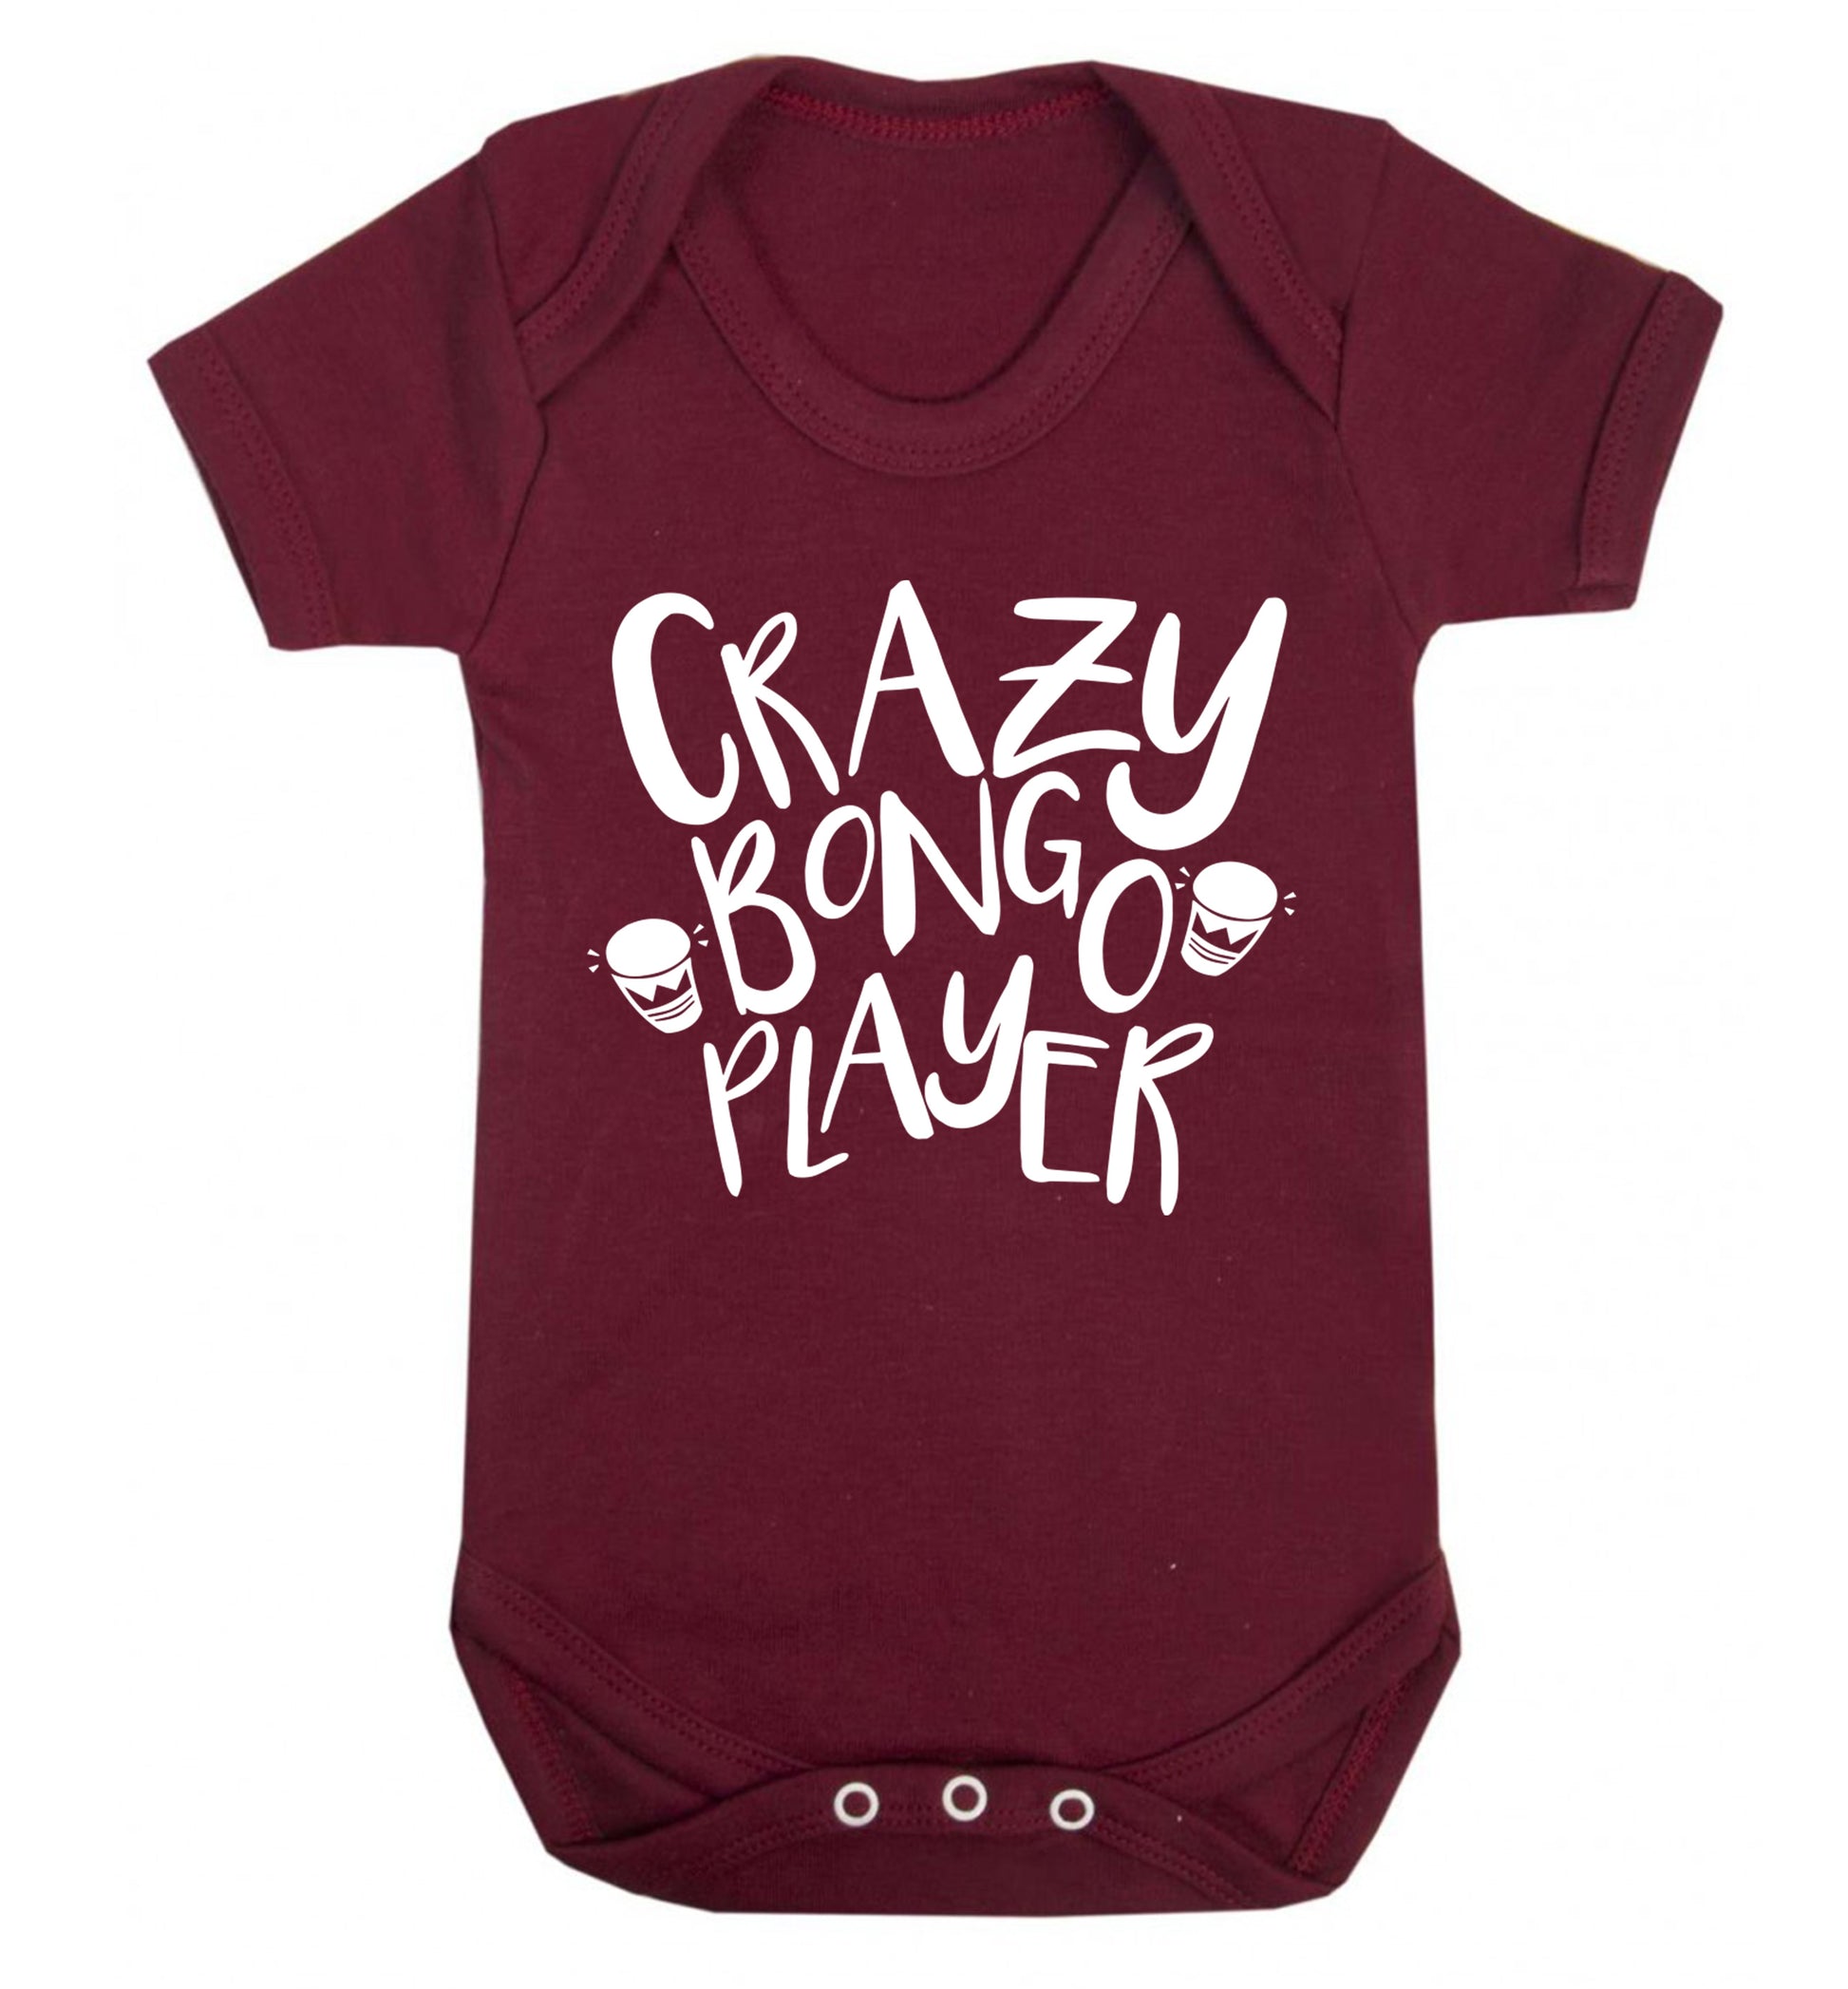 Crazy bongo player Baby Vest maroon 18-24 months